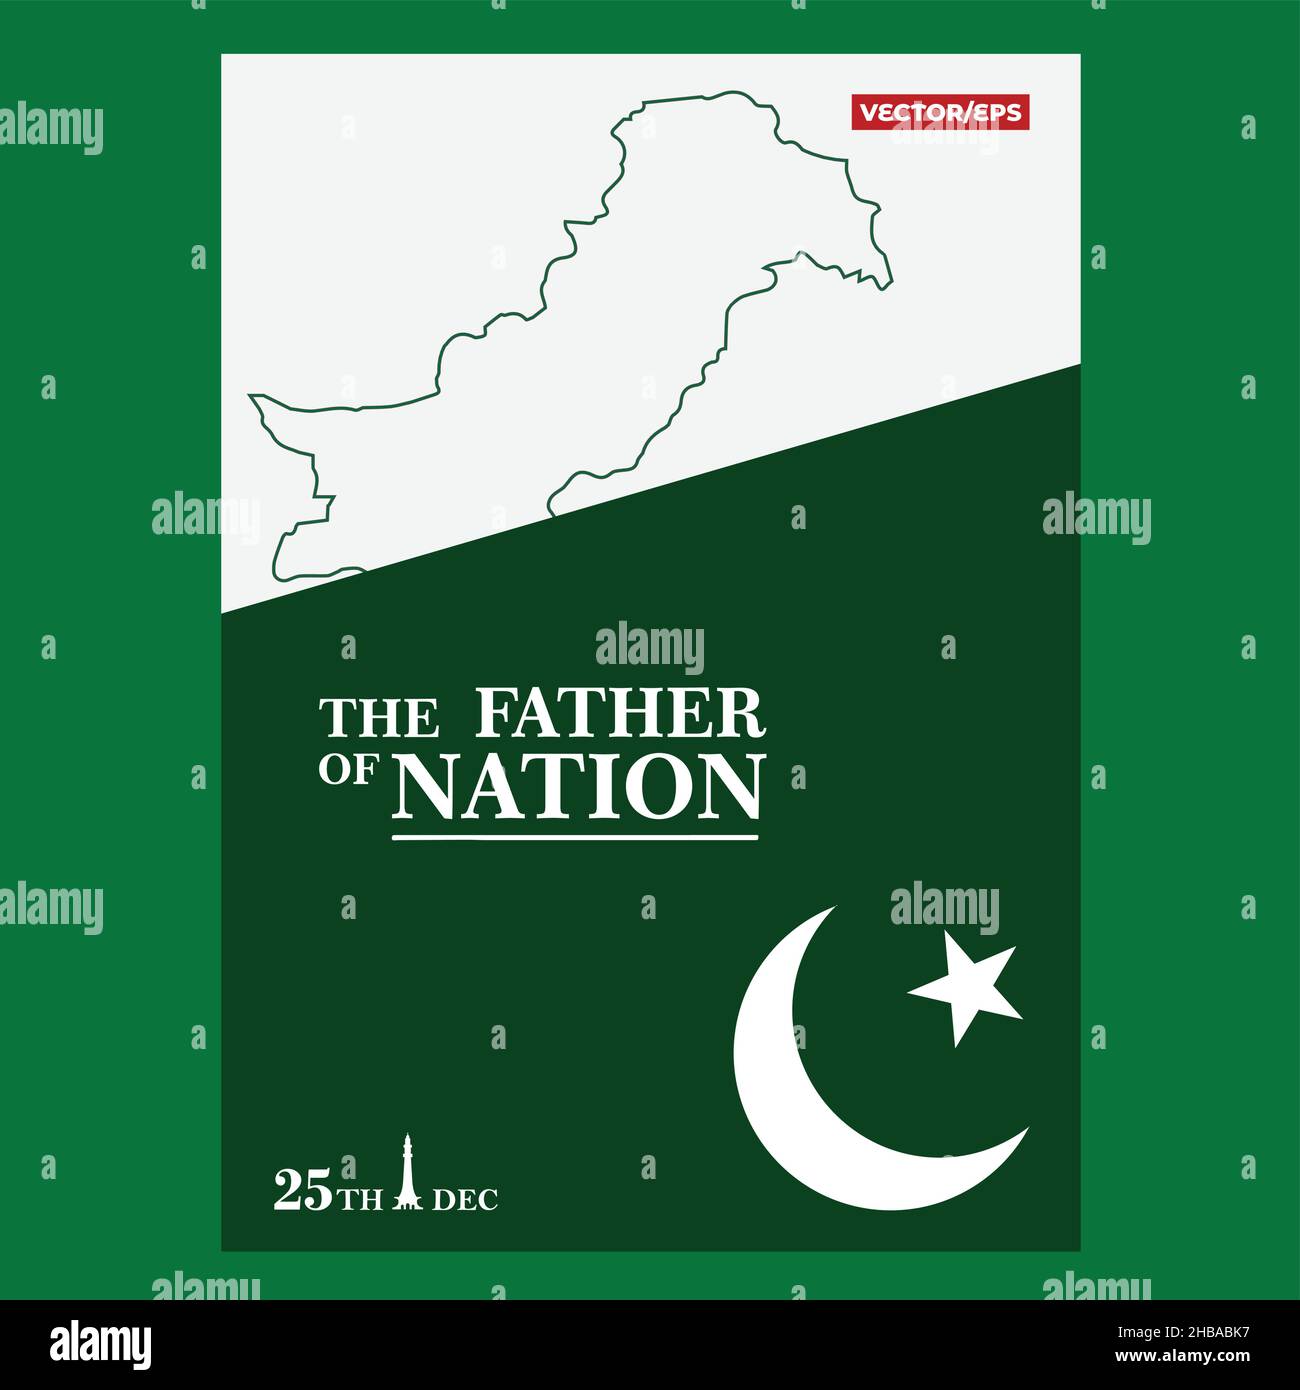 Père de nation Quaid e Azam Day Celebration avec la Typographie anglaise et Pakistan map fondateur du Pakistan Illustration de Vecteur